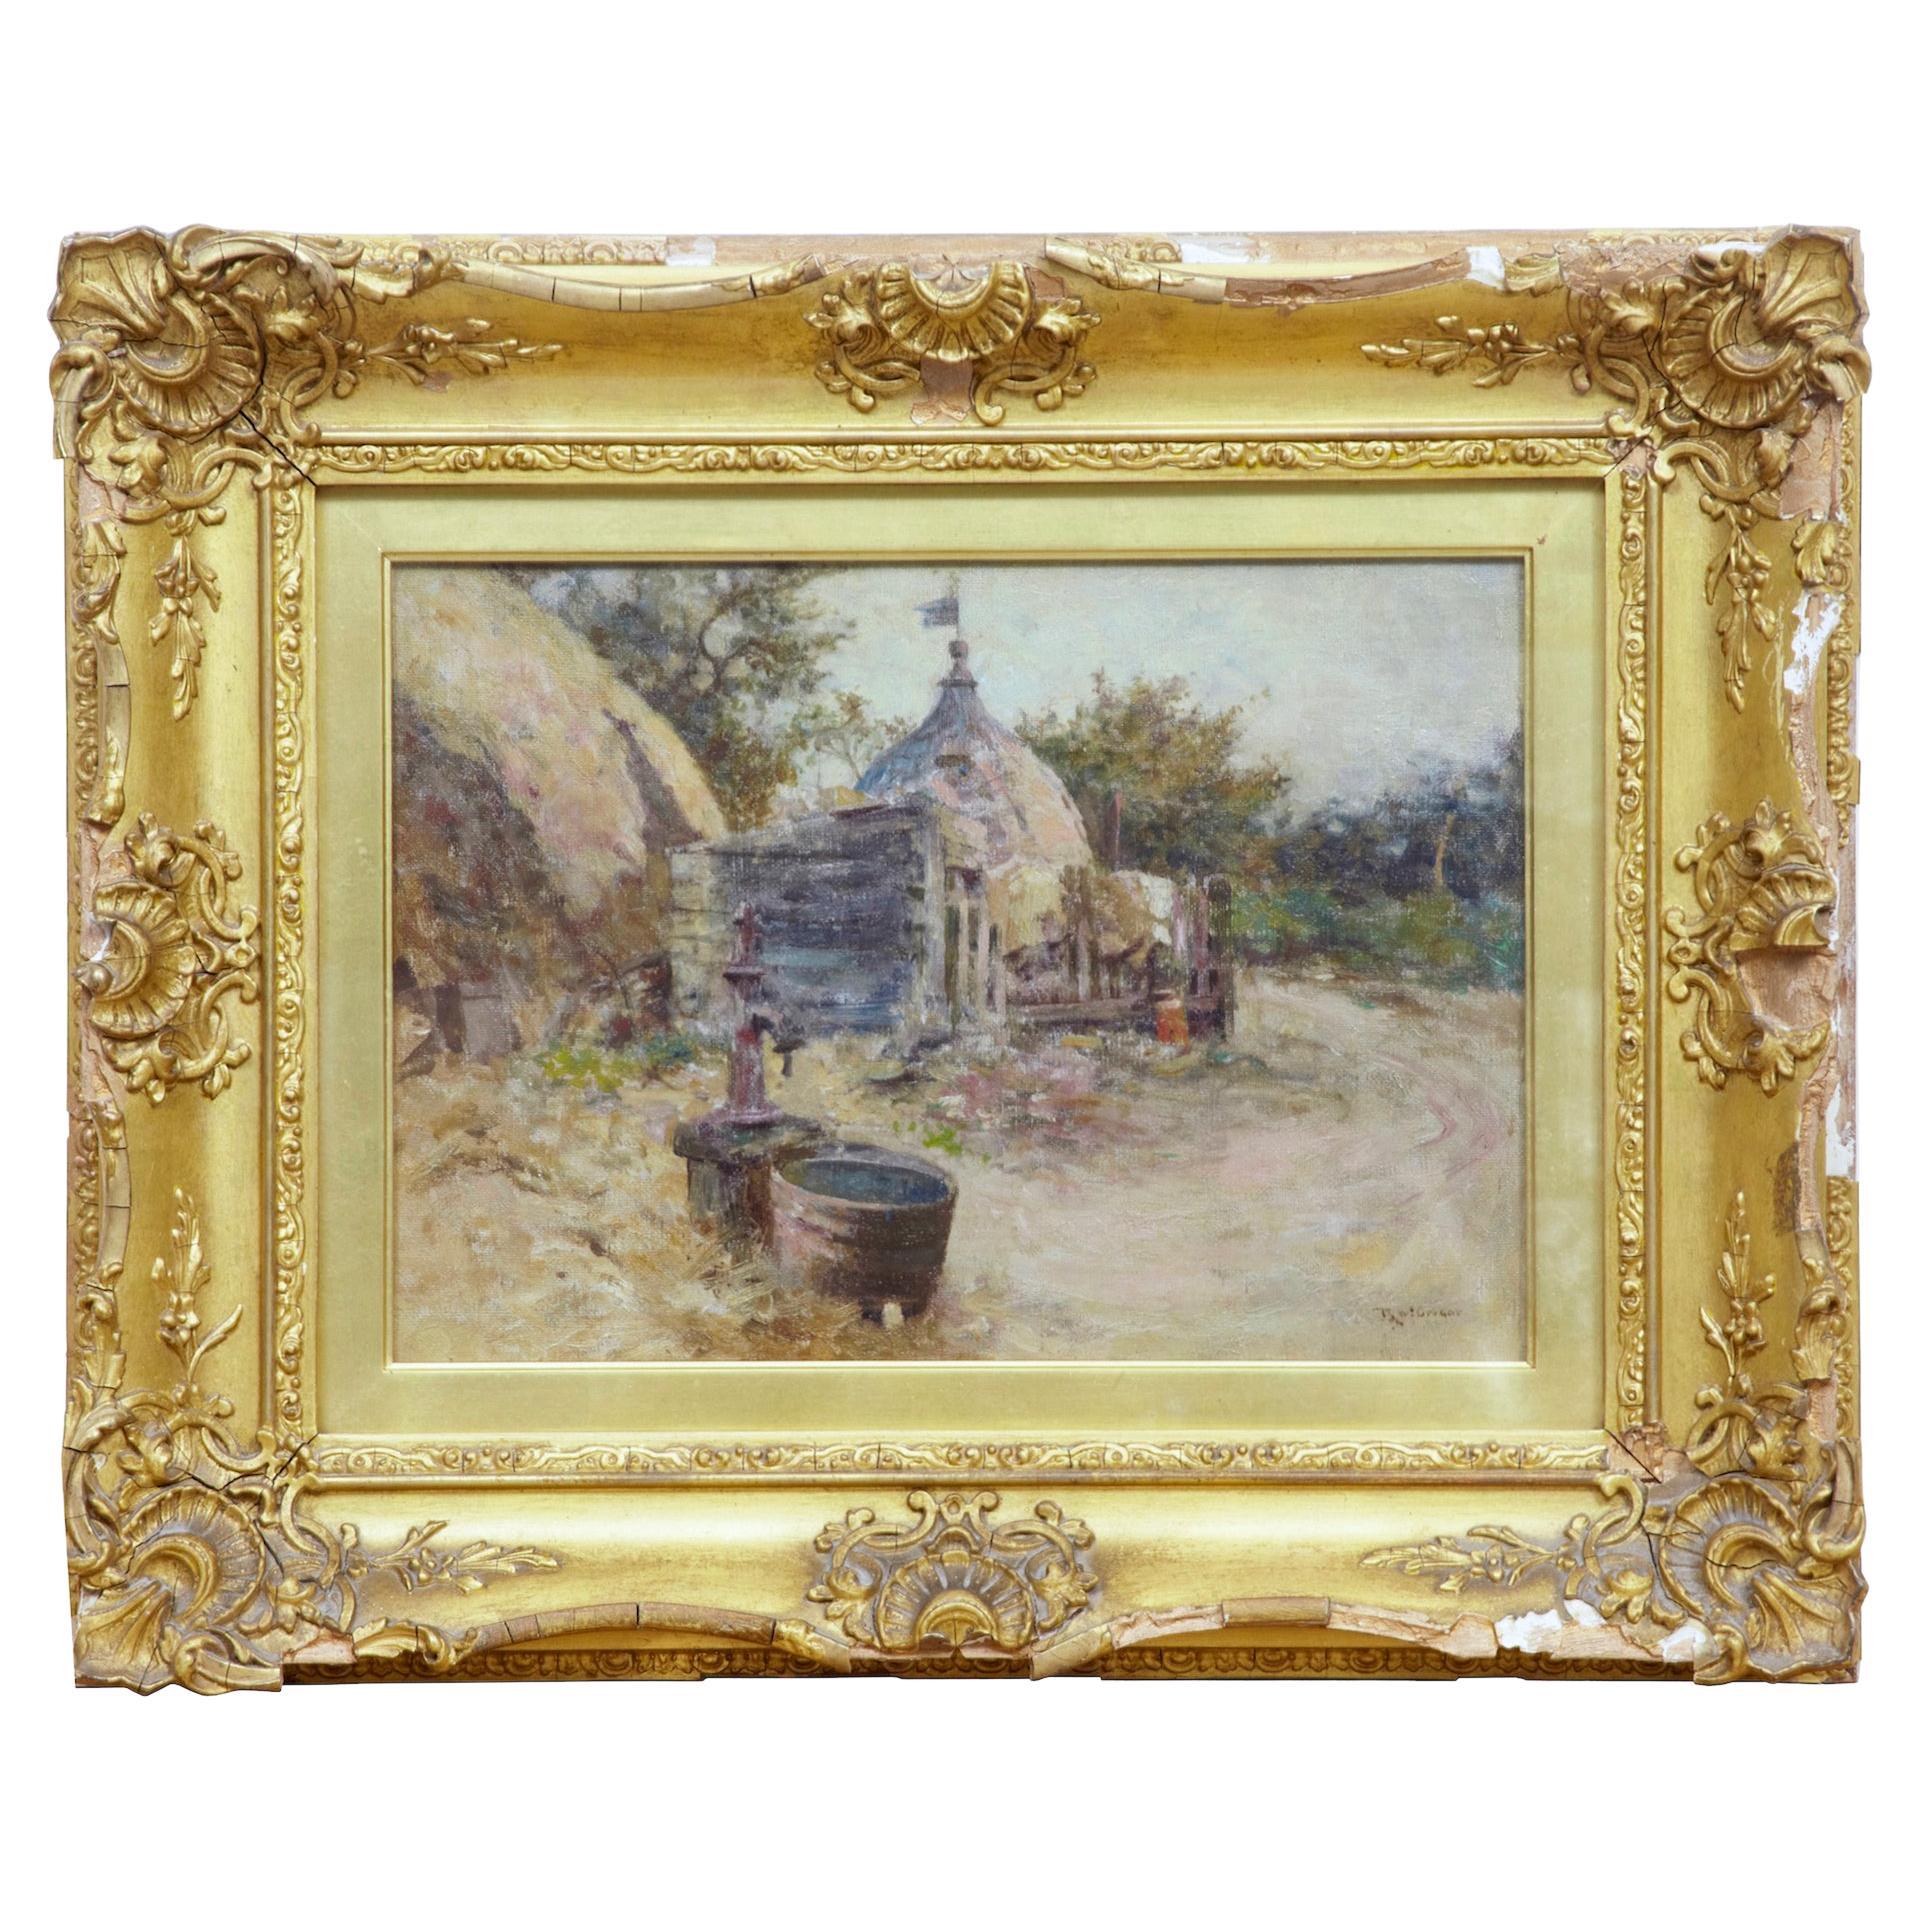 Robert Mcgregor, peinture à l'huile de genre d'une scène de village français